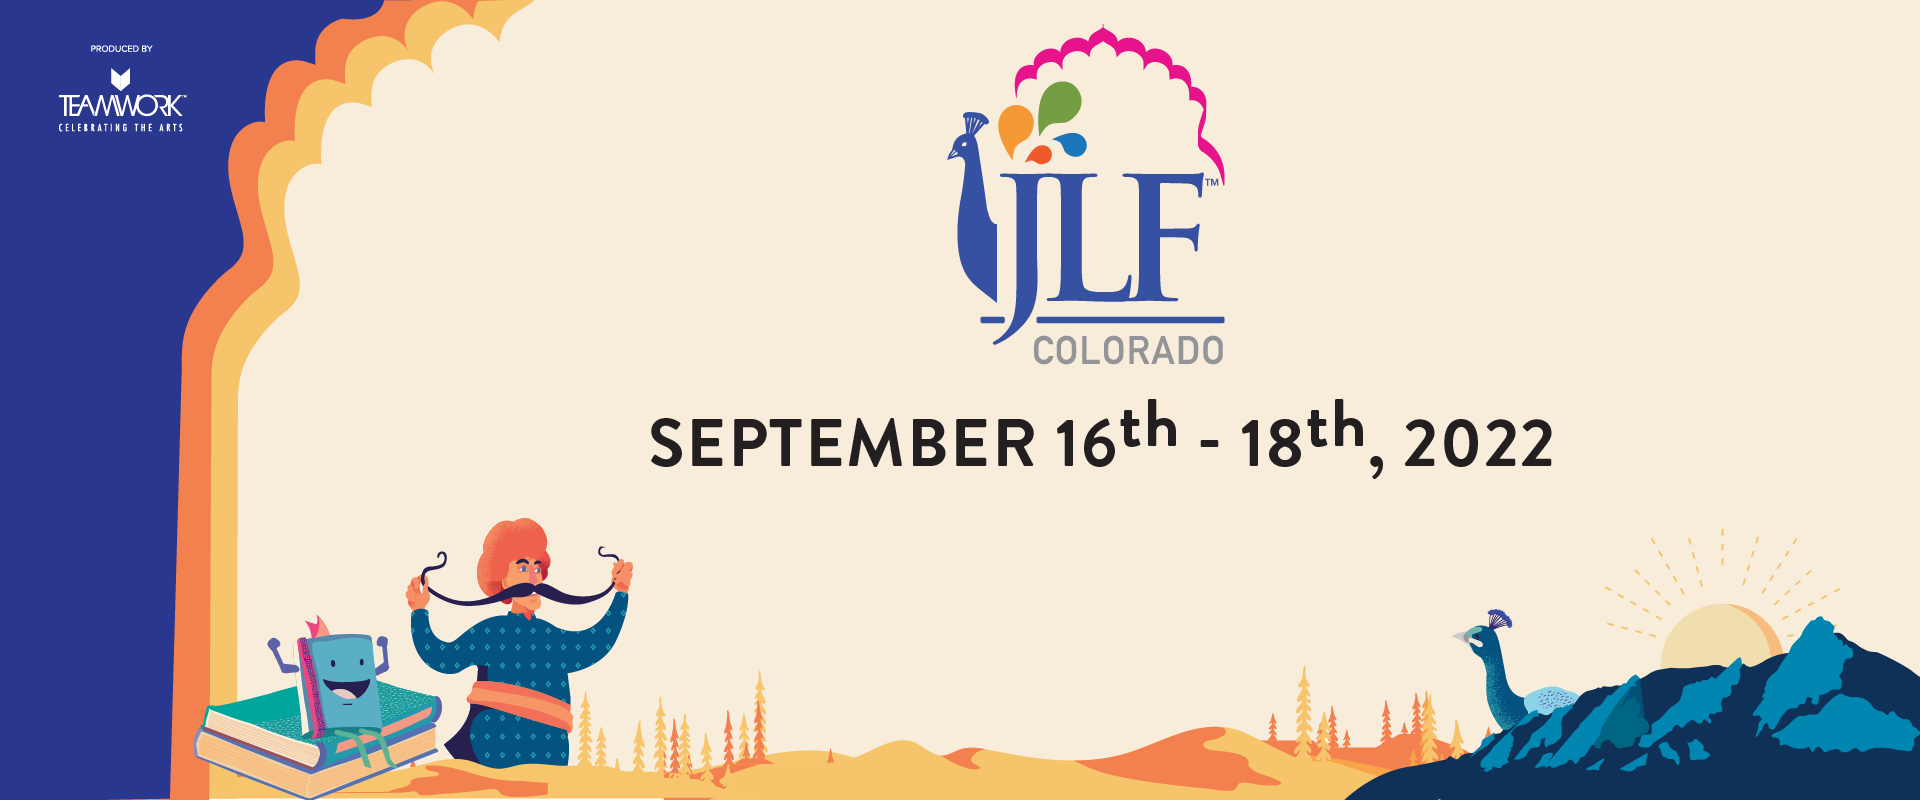 JLF Colorado 2022, Boulder, Colorado, United States